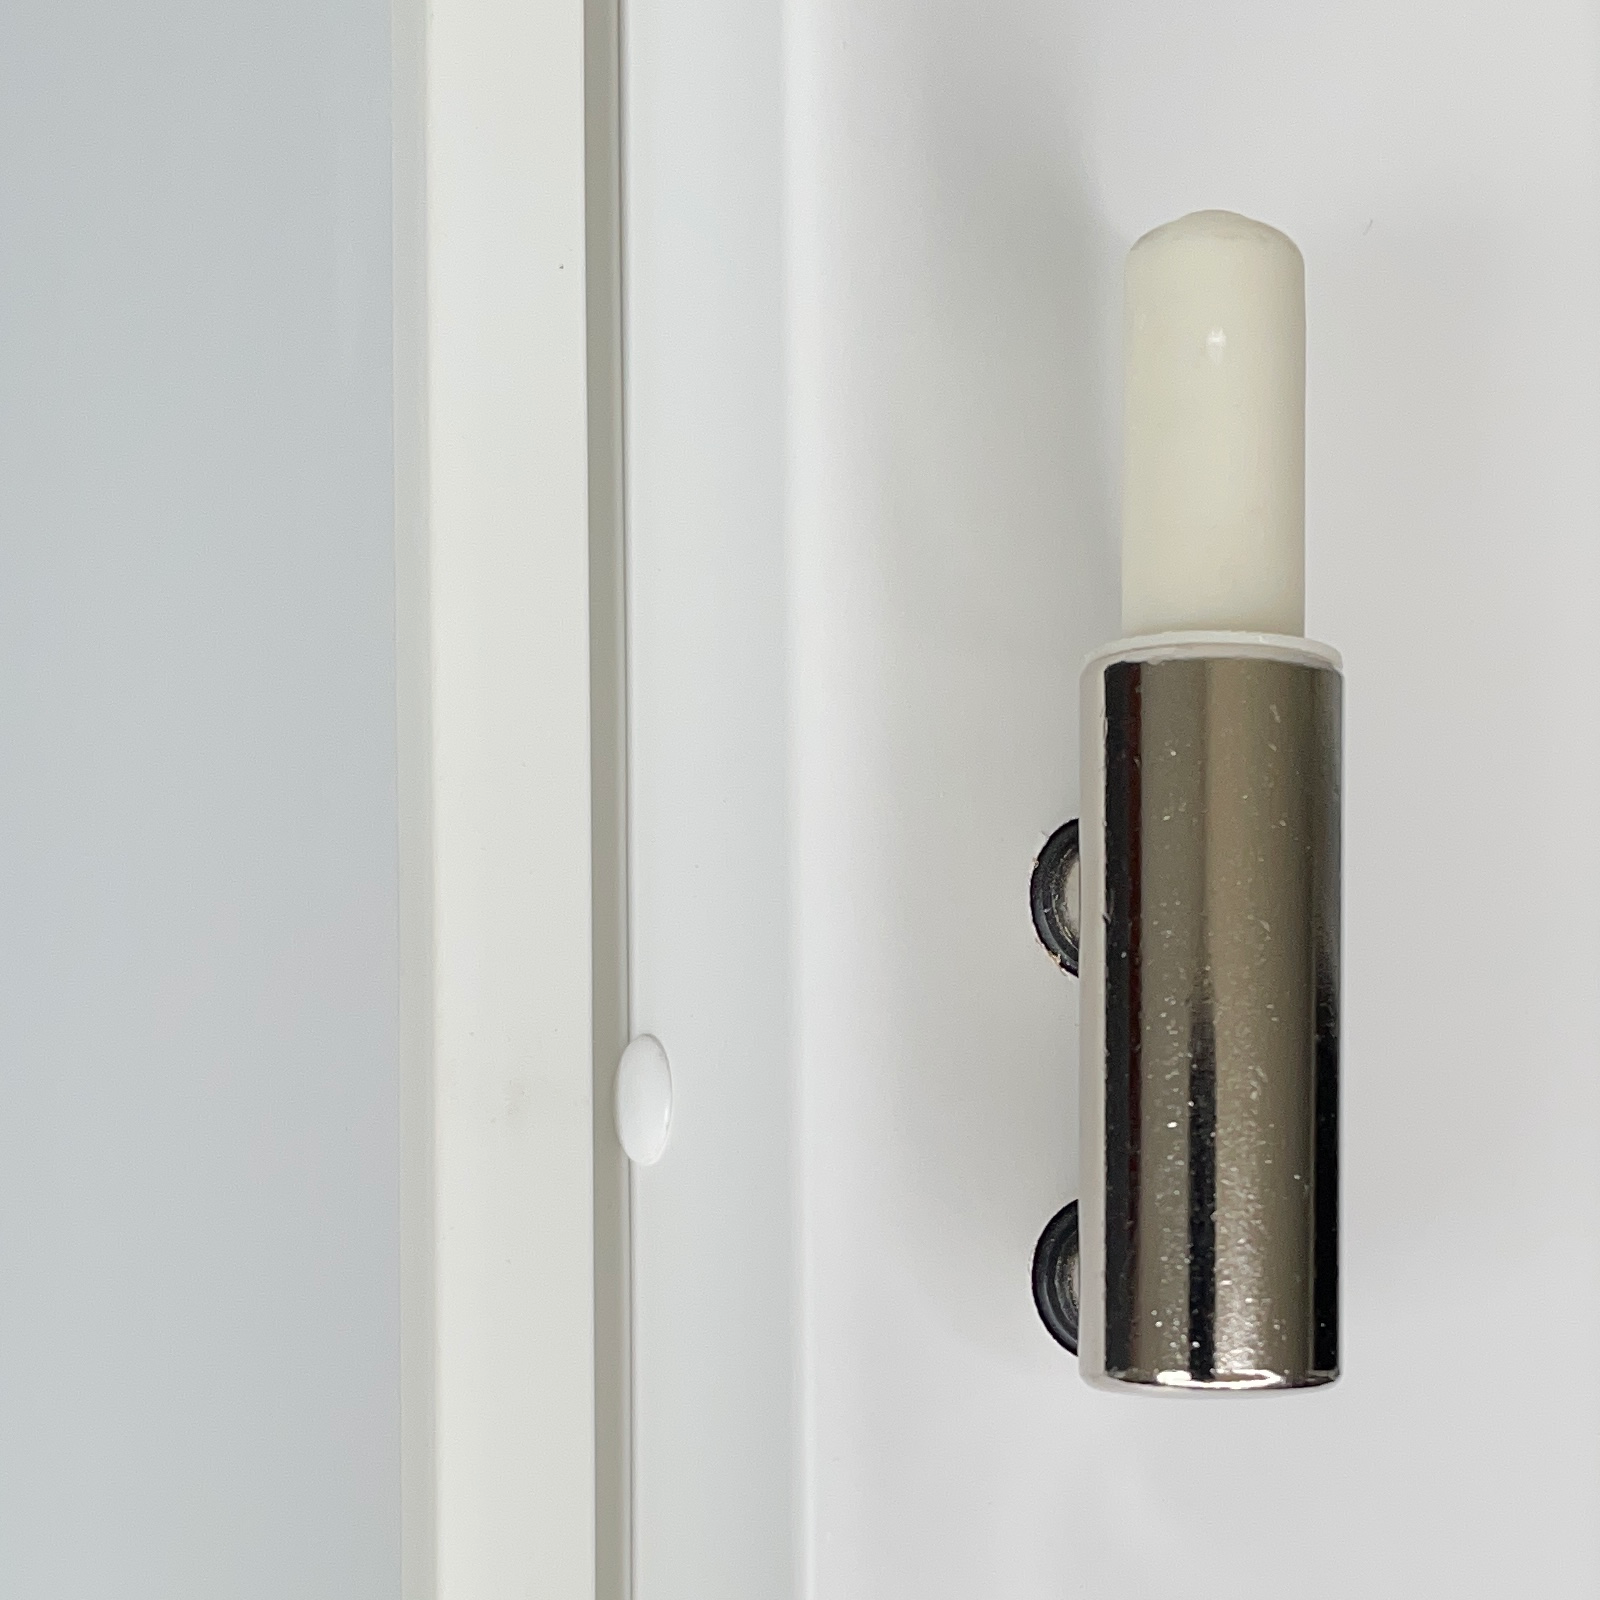 Zimmertür mit Zarge brillant-weiß Stiltür mit 1 Kassette und Lichtausschnitt Designkante - Modell Stiltür M13LA